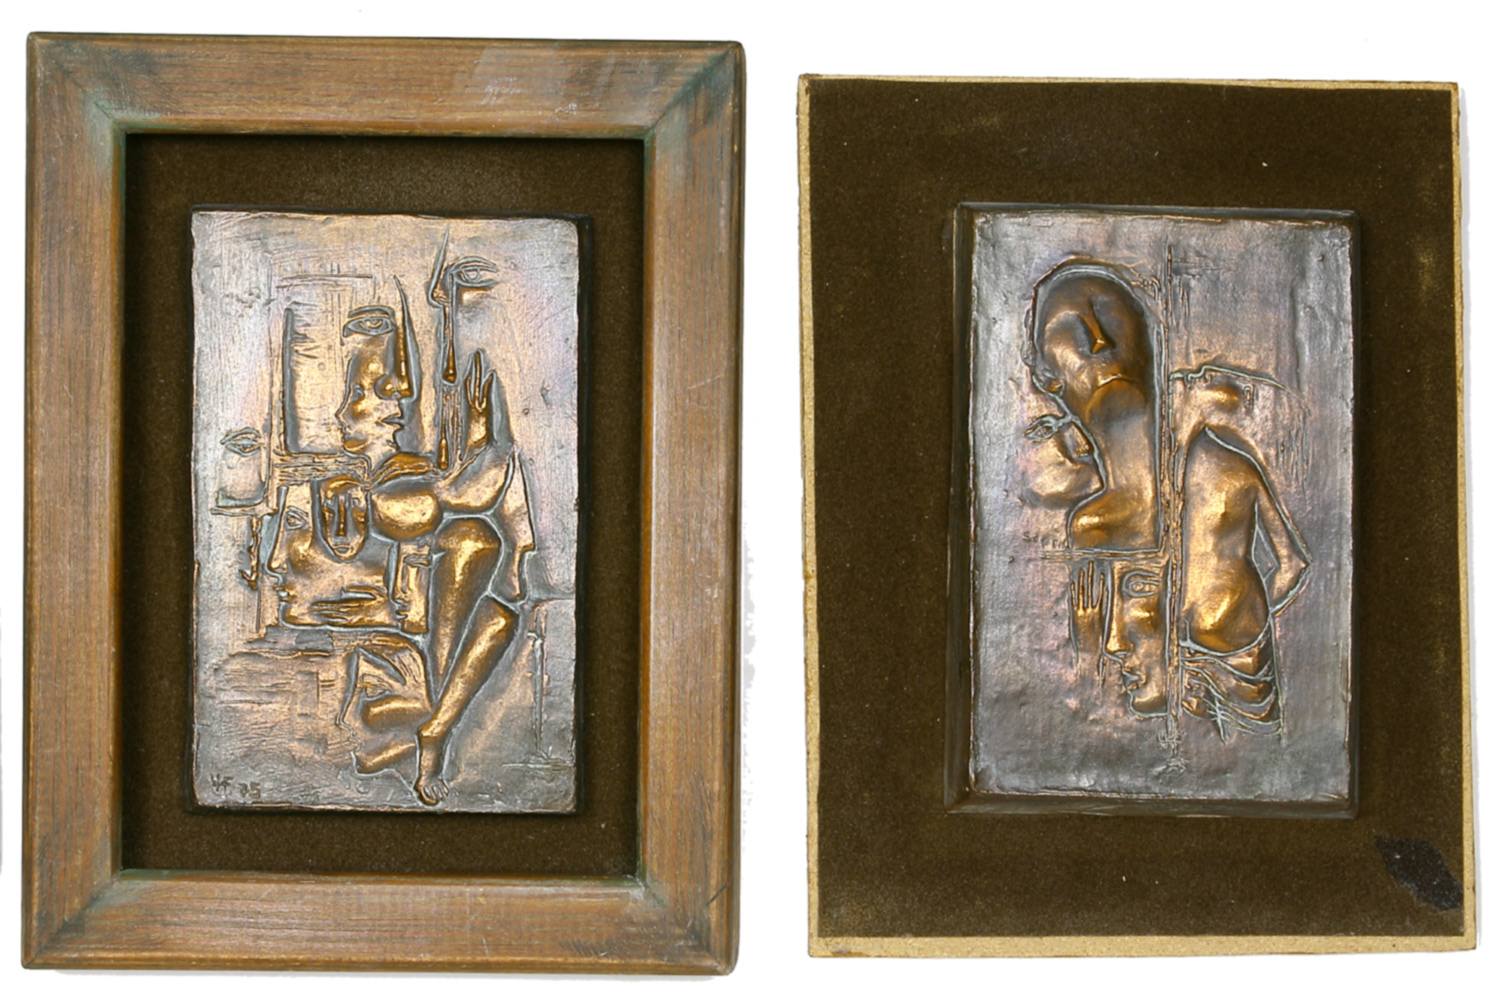 Auktionshaus Quentin Berlin  Skulptur Hanke-FÃ¶rster  Ursula  Eselreiter. 3 Reliefs